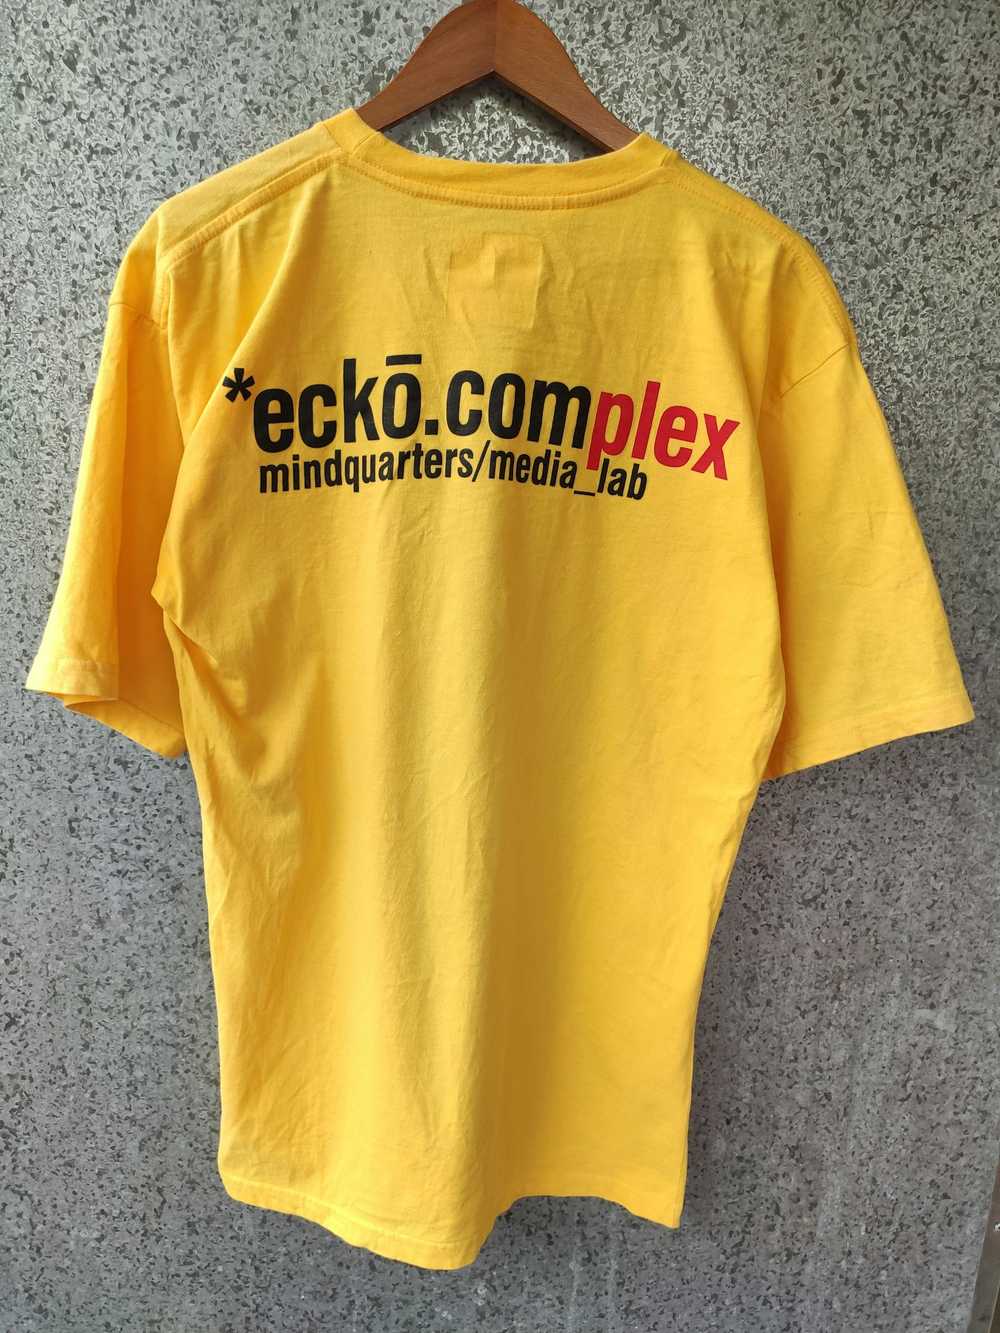 Ecko Unltd. × Jnco × Rap Tees Ecko t shirt big lo… - image 3